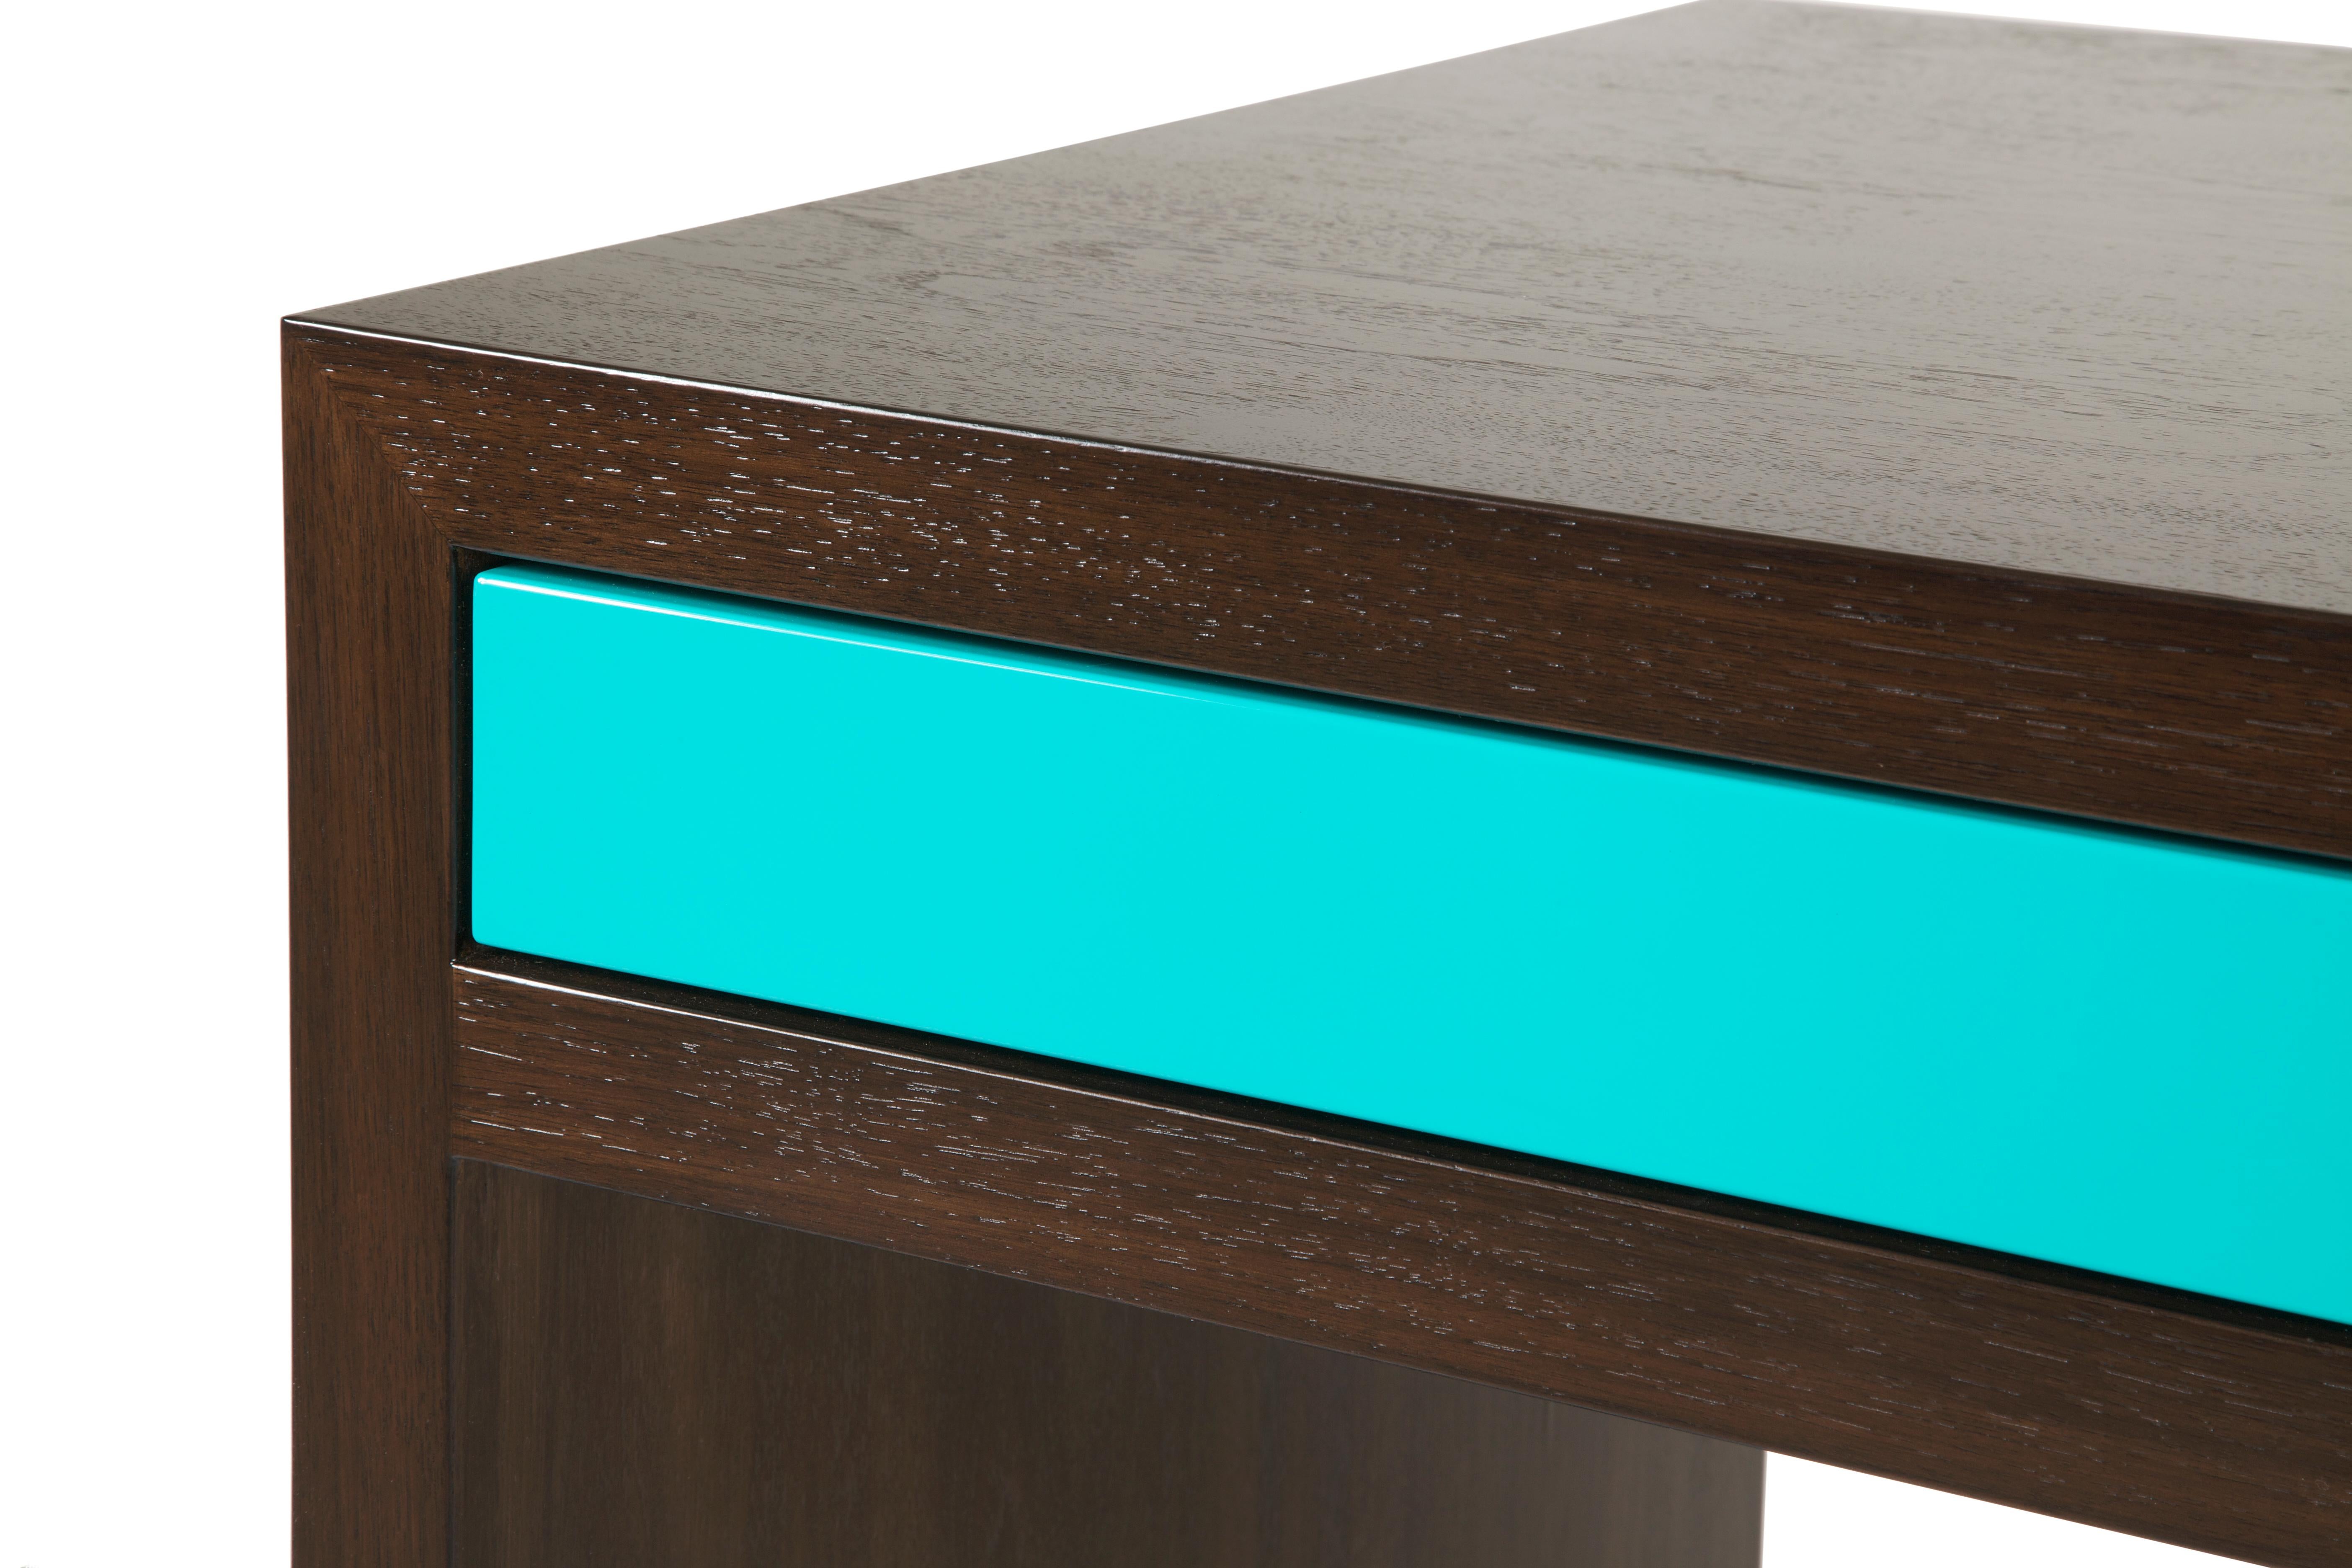 Der Stash-Schreibtisch, ein Traum für Minimalisten, ist eine perfekte Kombination aus tiefem, sattem Walnussholz mit einem Hauch von Farbe. Sein schlankes und klares Profil ist ideal für kleine Räume. Die drei Schubladen sind mit